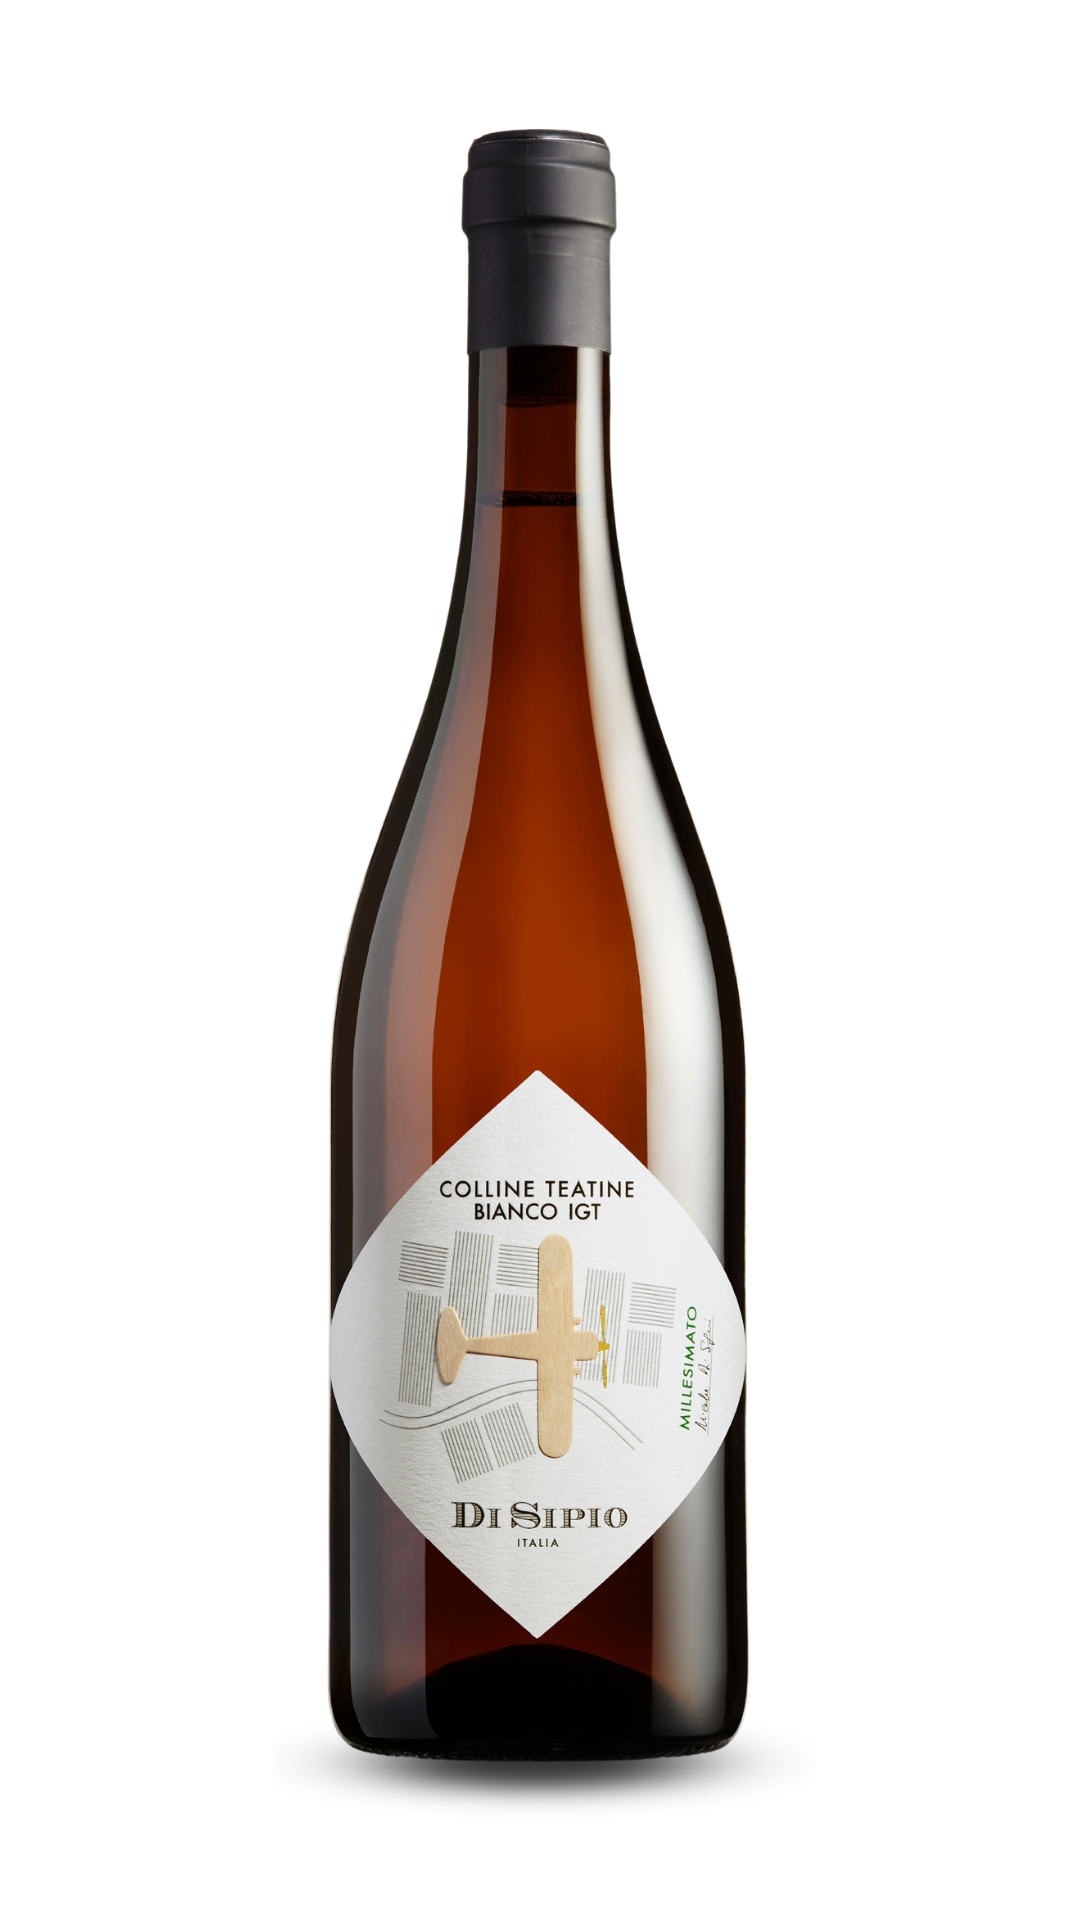 Più vitigni bianchi rendono protagonista questo vino ottenuto dalla fermentazione alcolica ed affinamento in piccole botti.